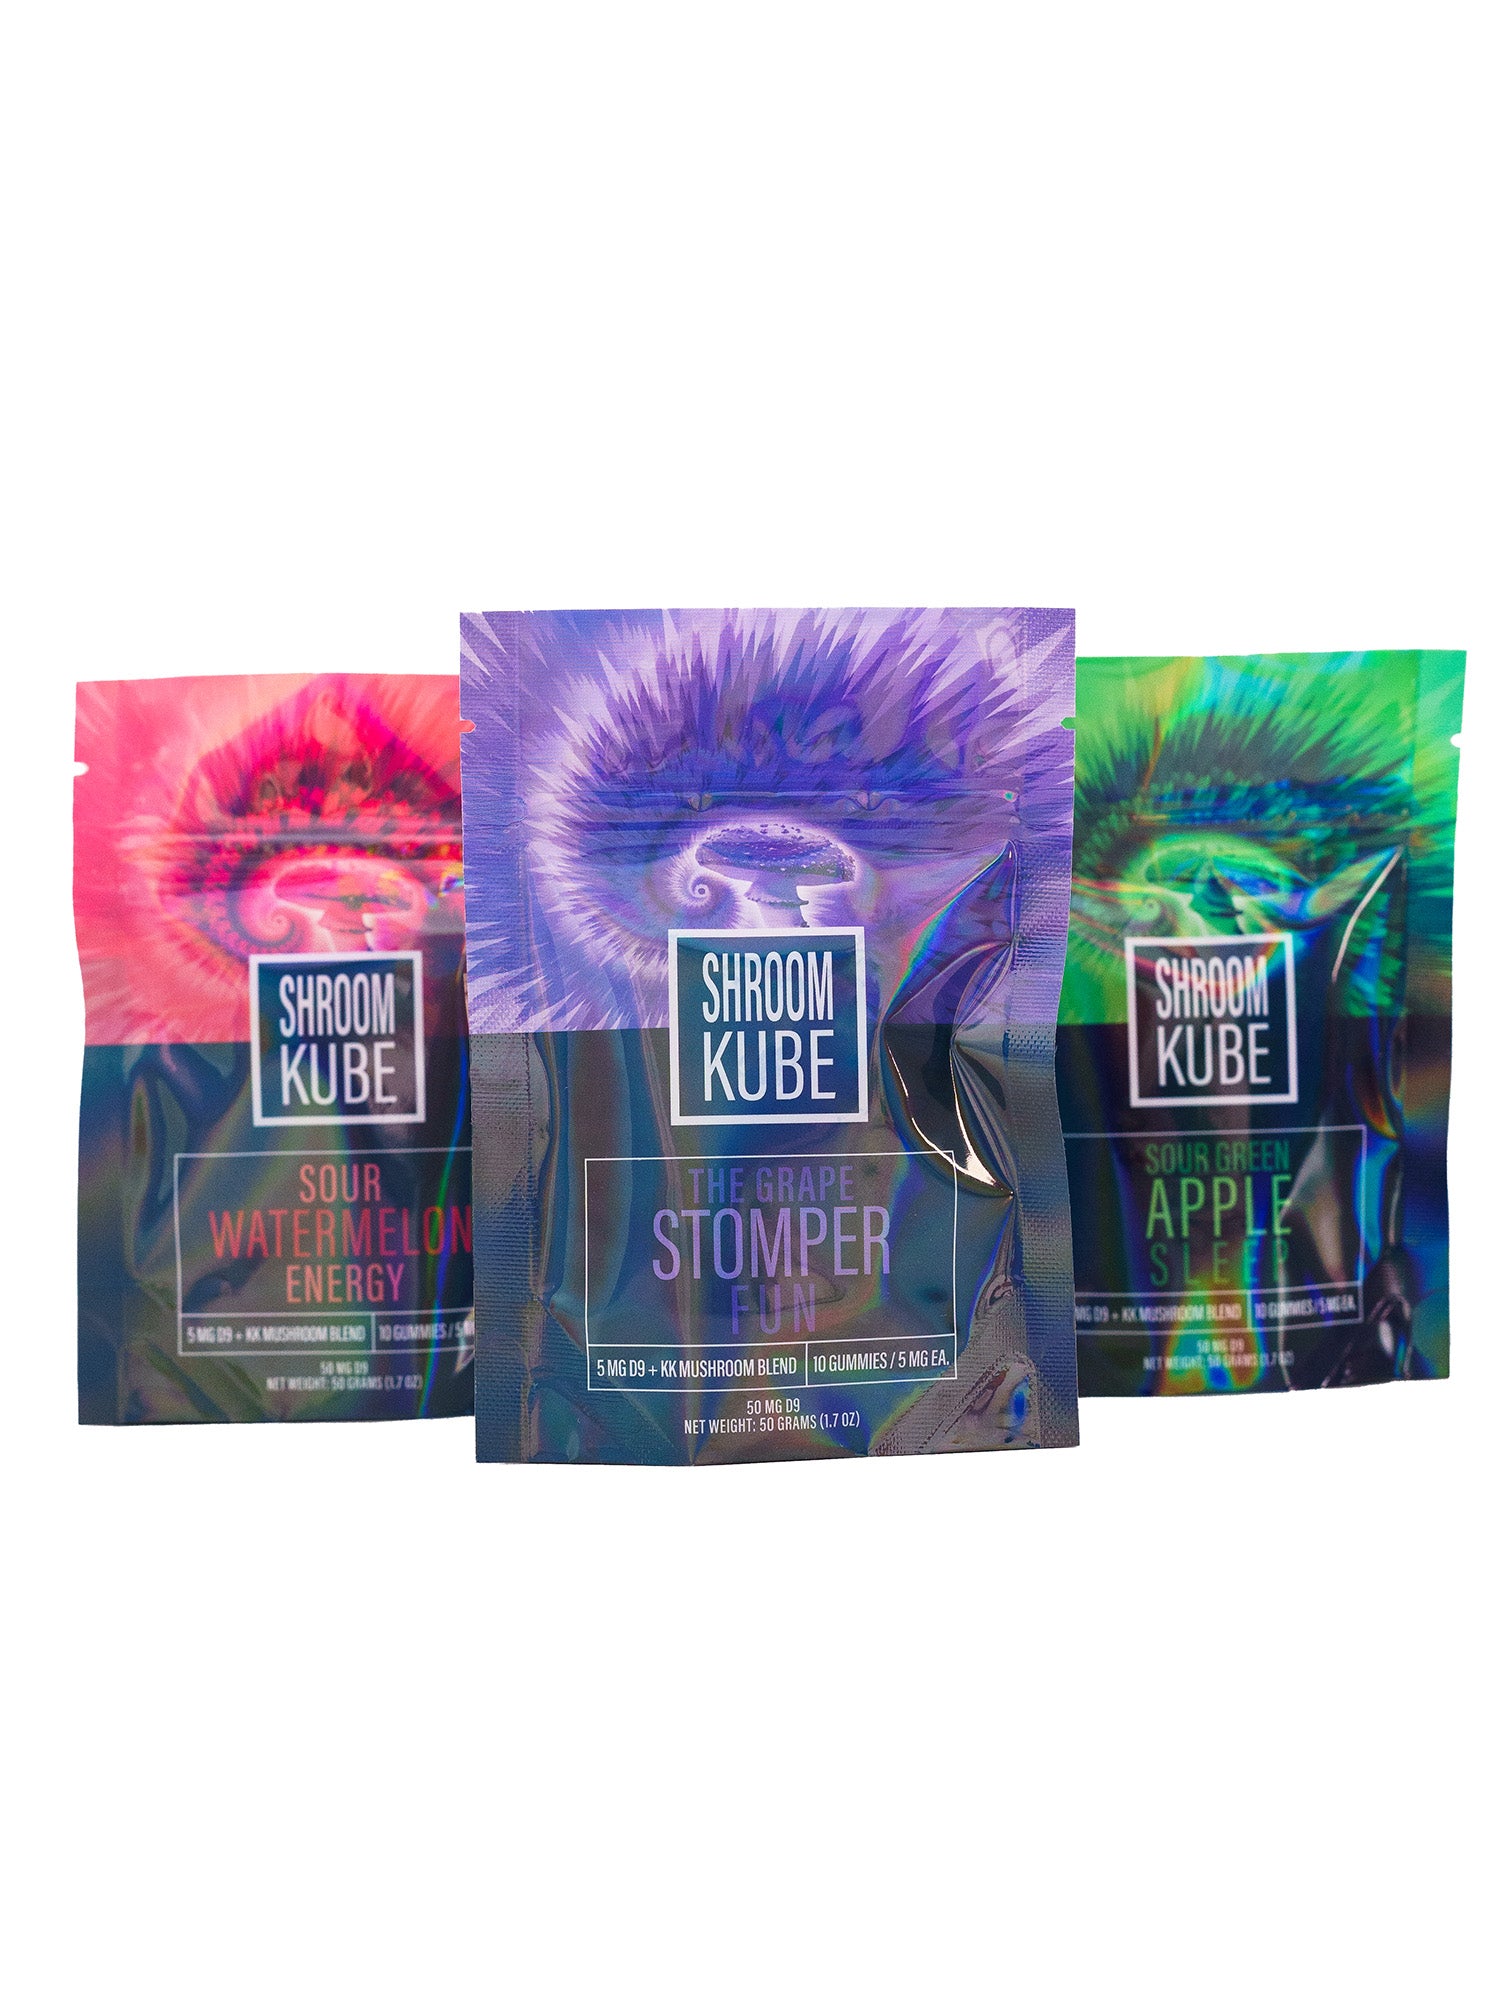 Shroom Kube - Grape Stomper - 10 Pack Bag (Functional Mushrooms + D9 THC)